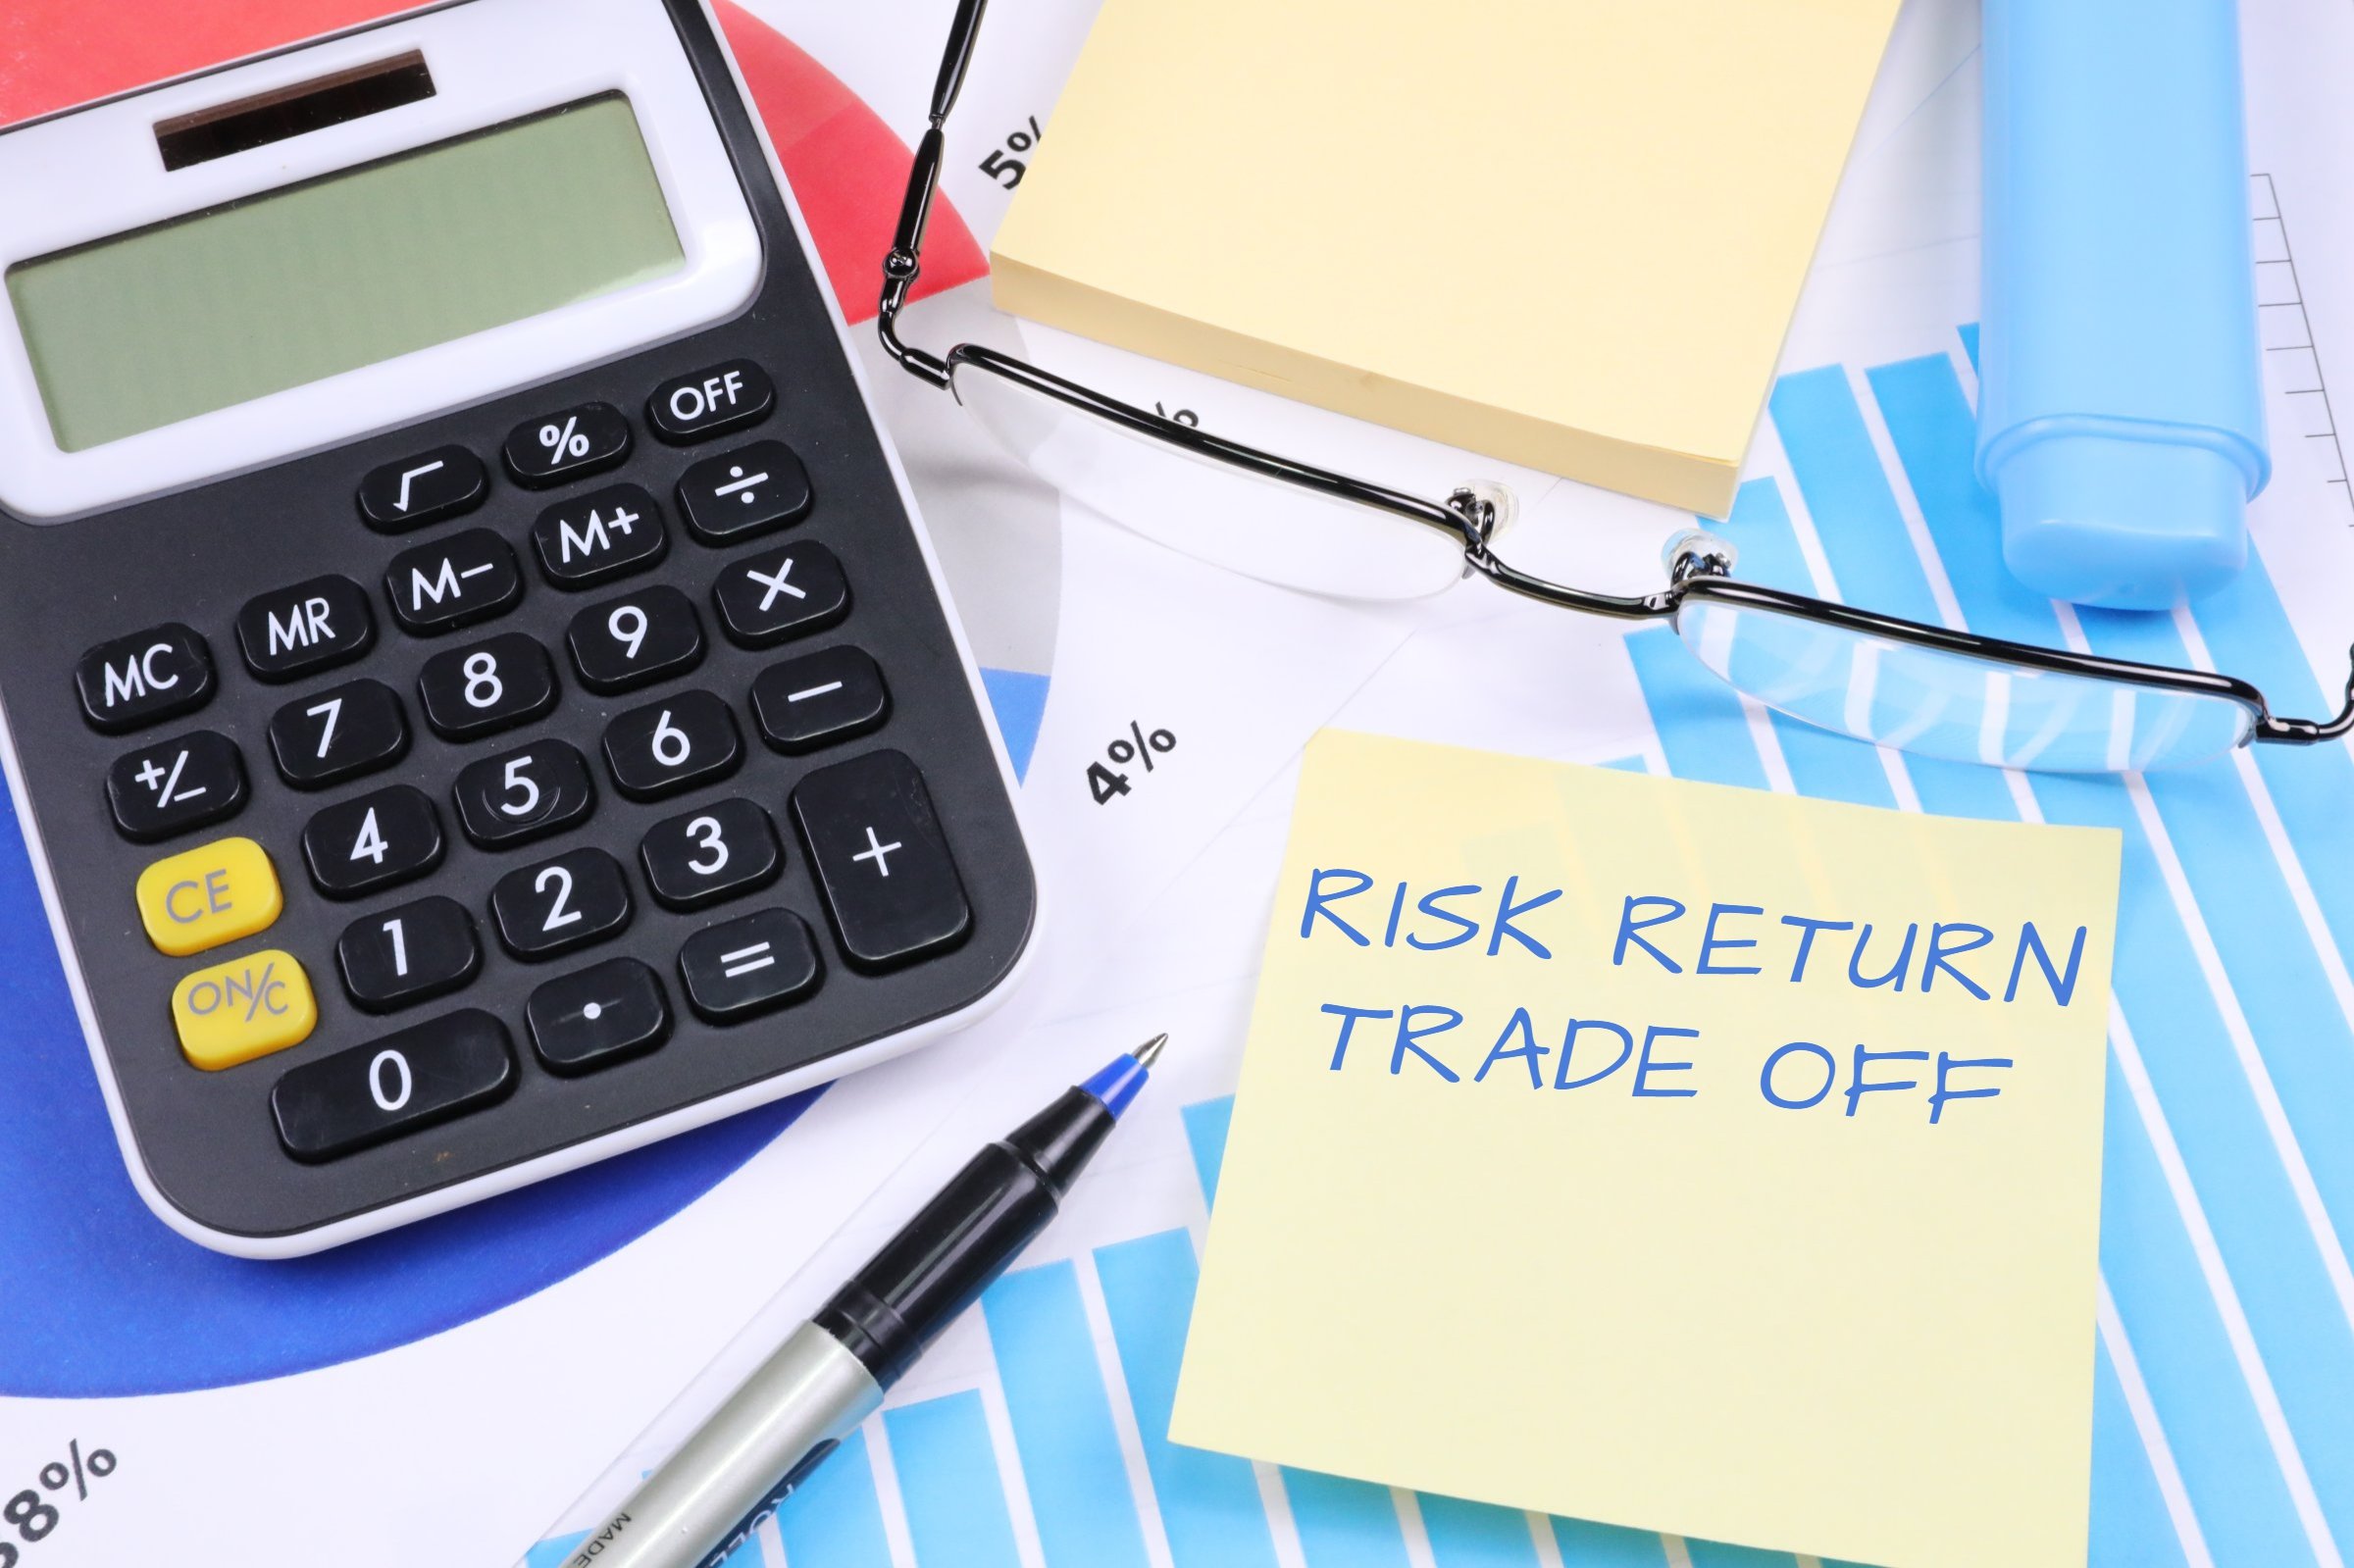 Risk Return Trade Off